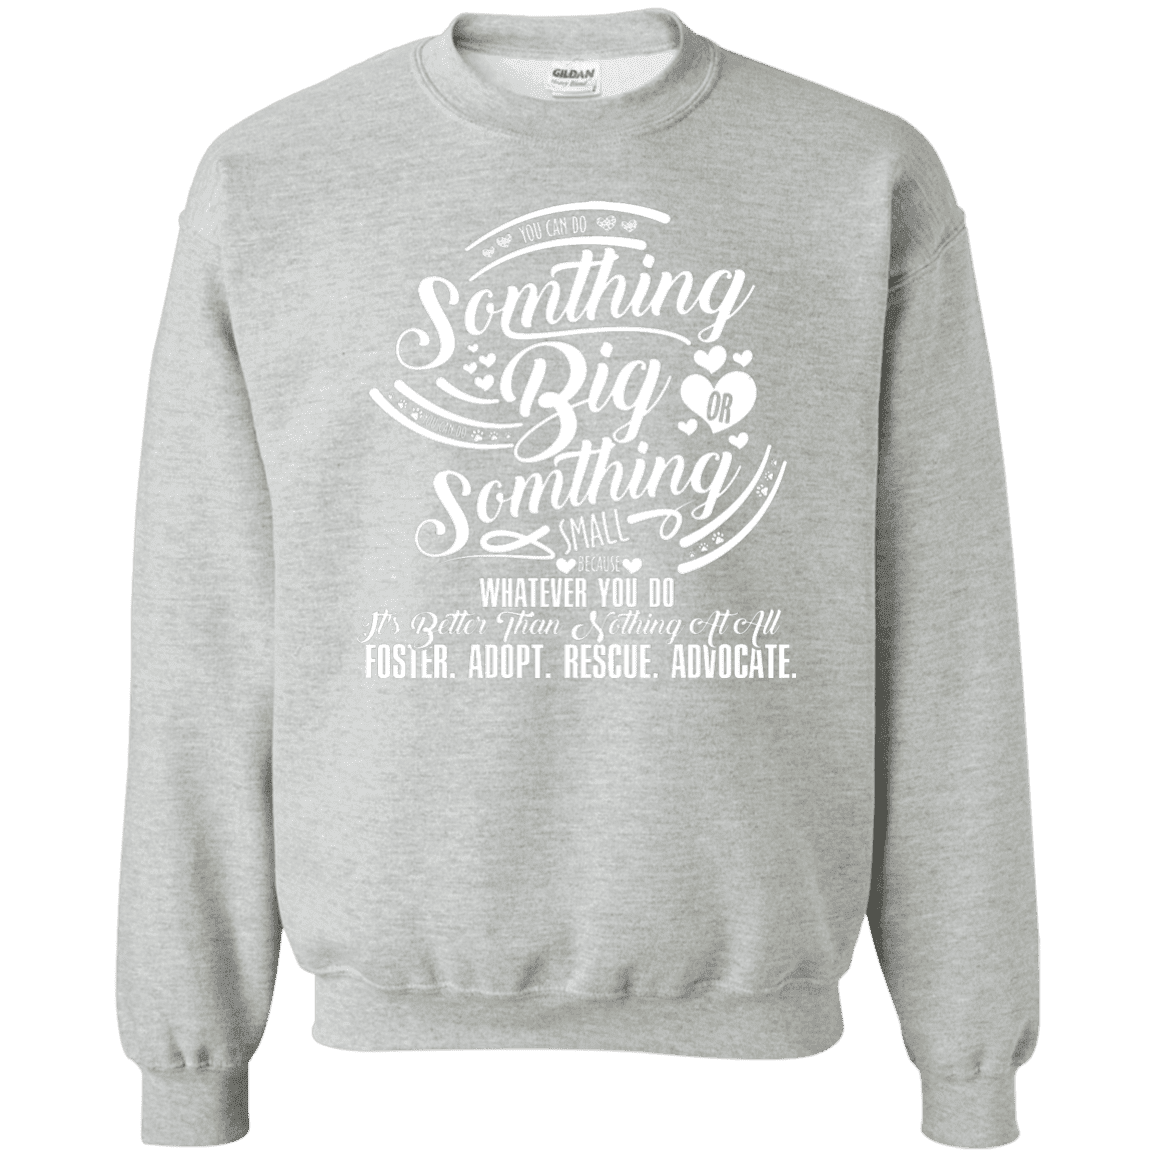 Do Something Big - Sweatshirt.